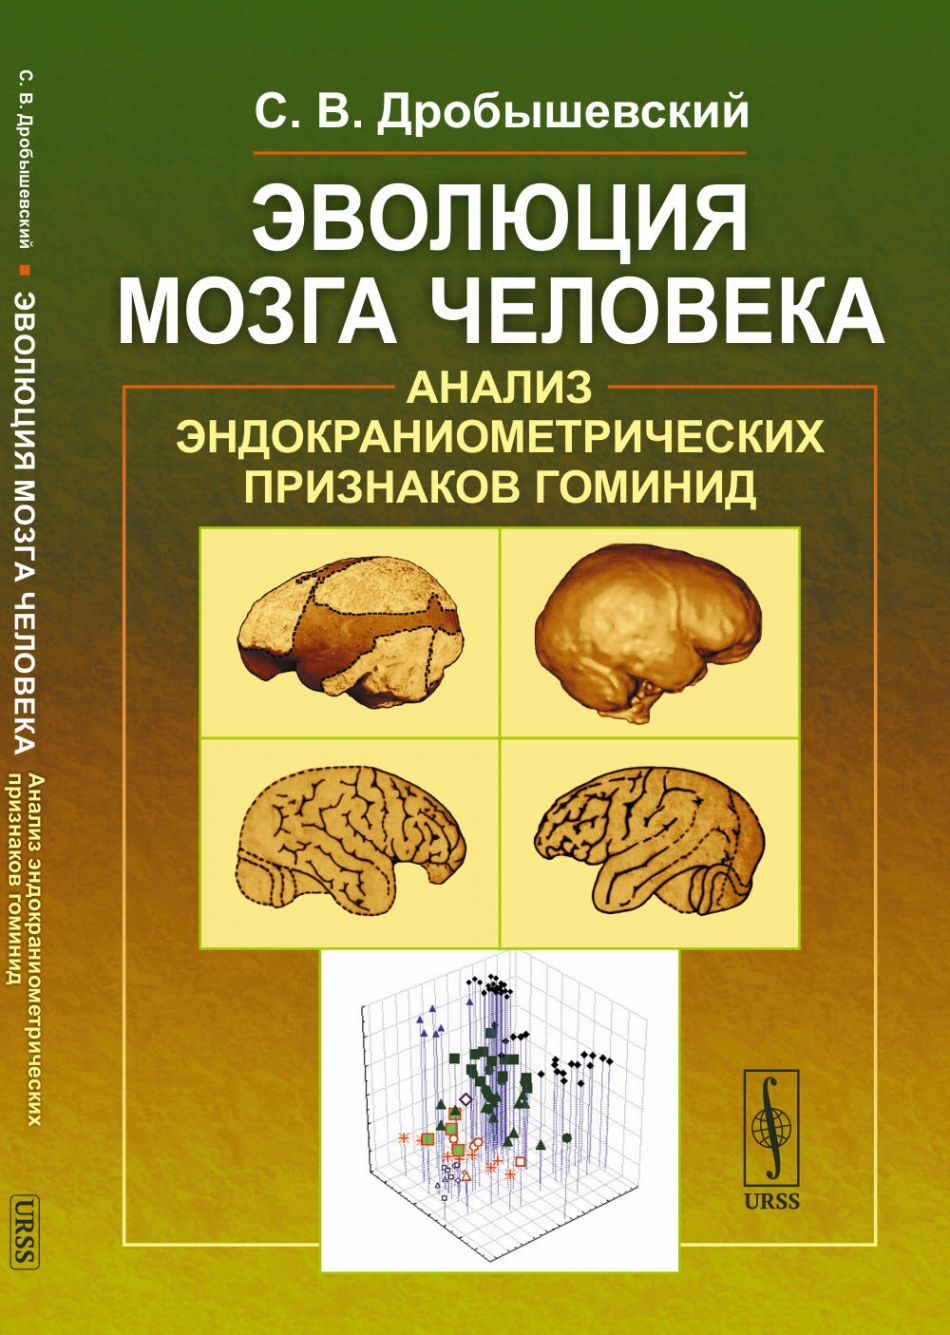 Дробышевский С.В. Эволюция мозга человека: Анализ эндокраниометрических признаков гоминид 